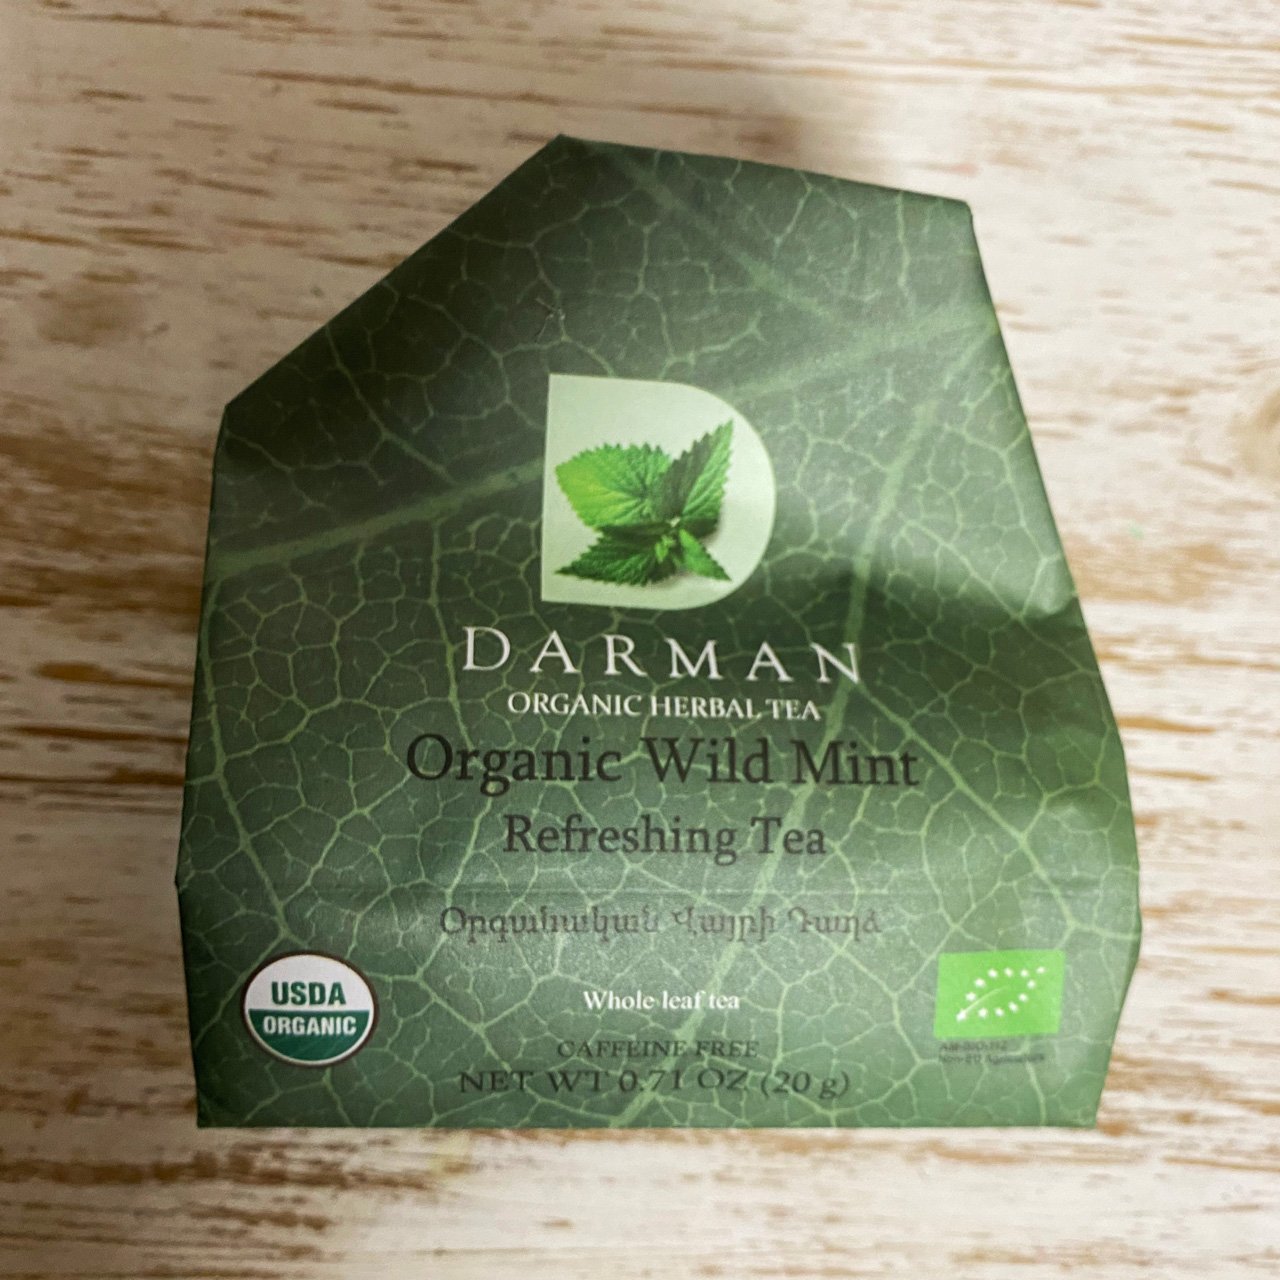 Darman Organic Wild Mint Tea - 20g